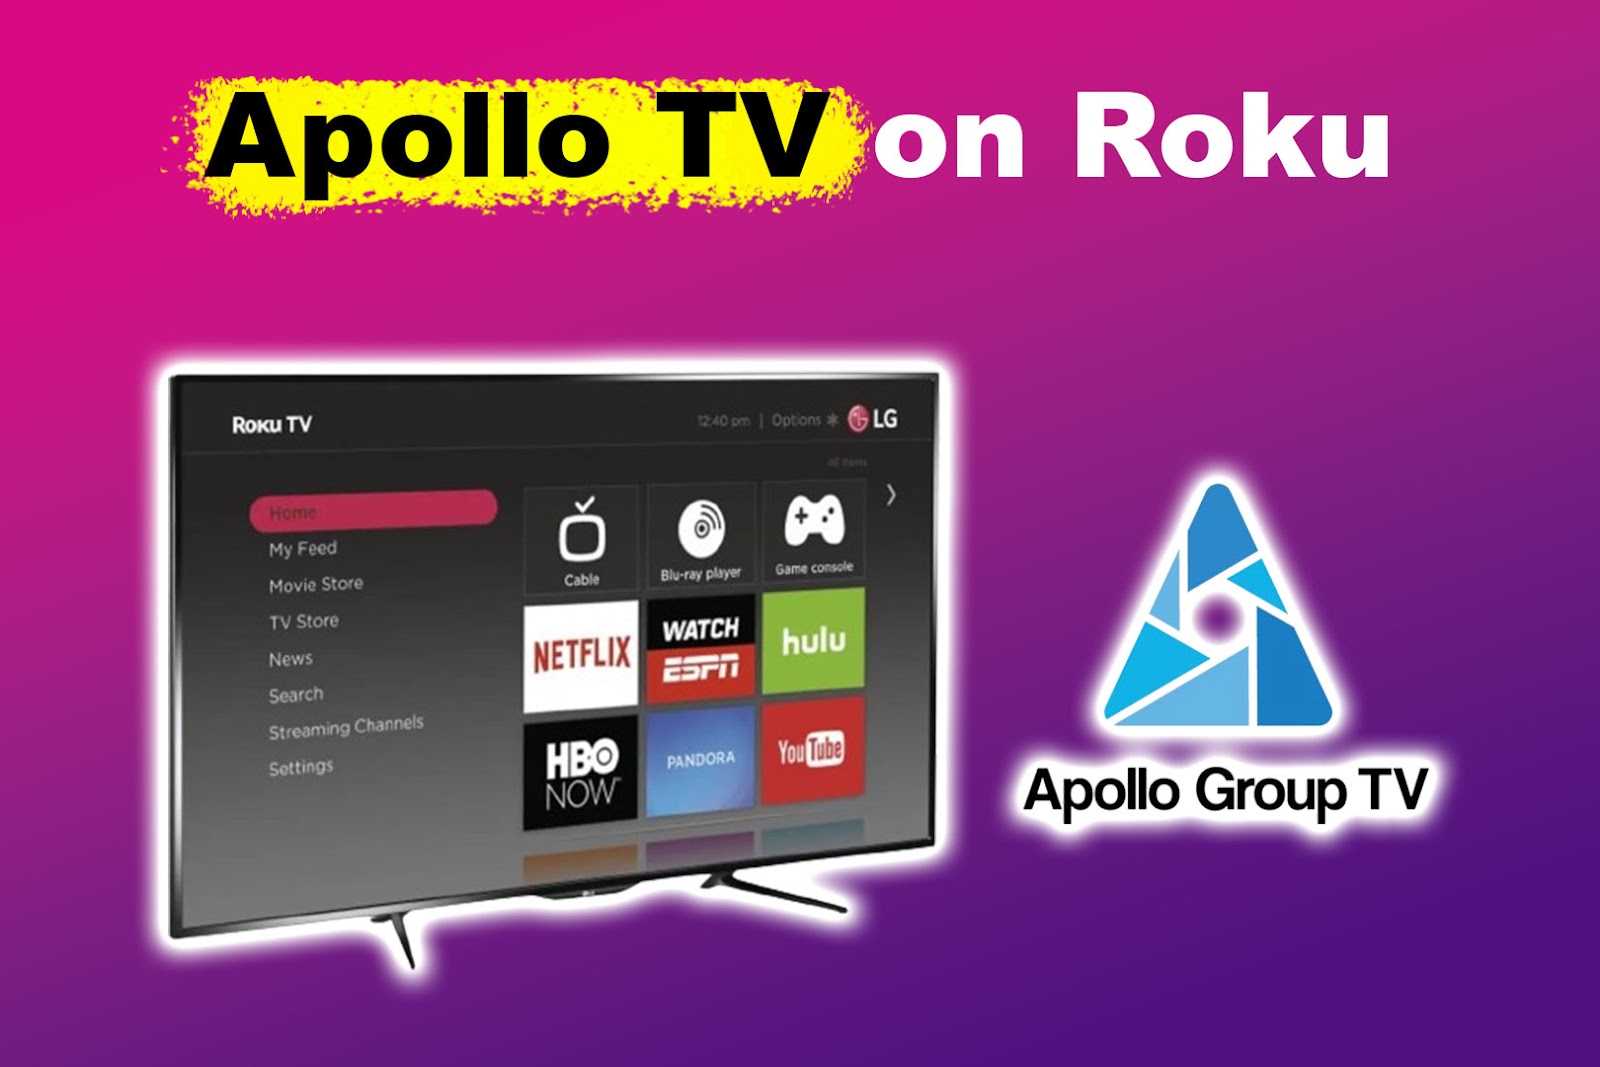 Apollo TV on Roku